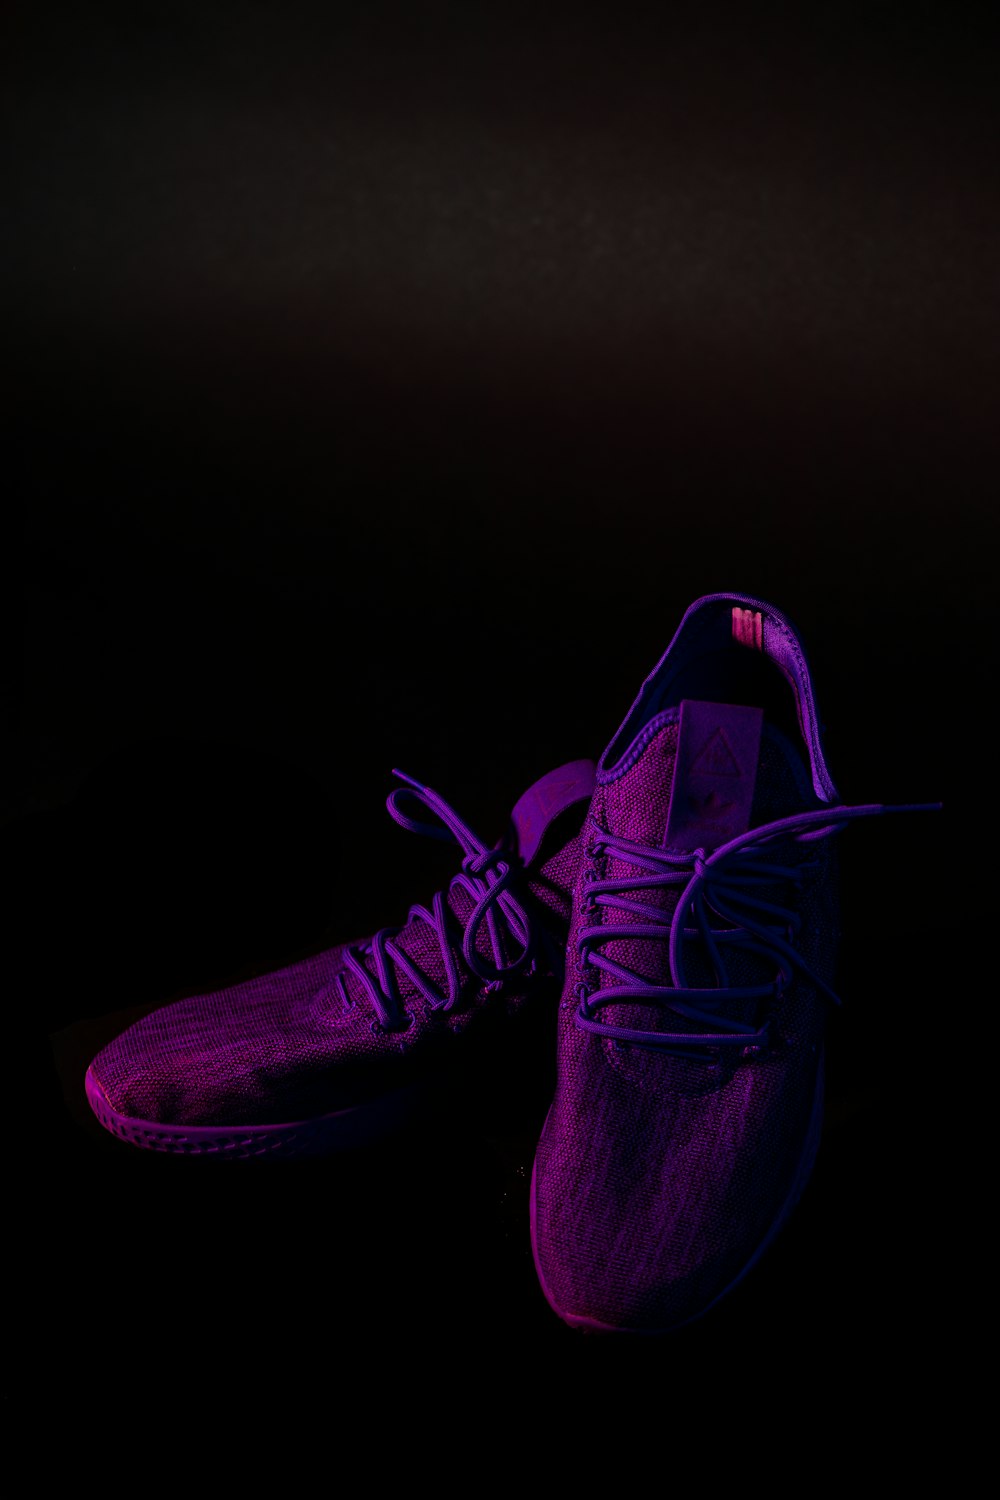 pair of purple mesh running shoes